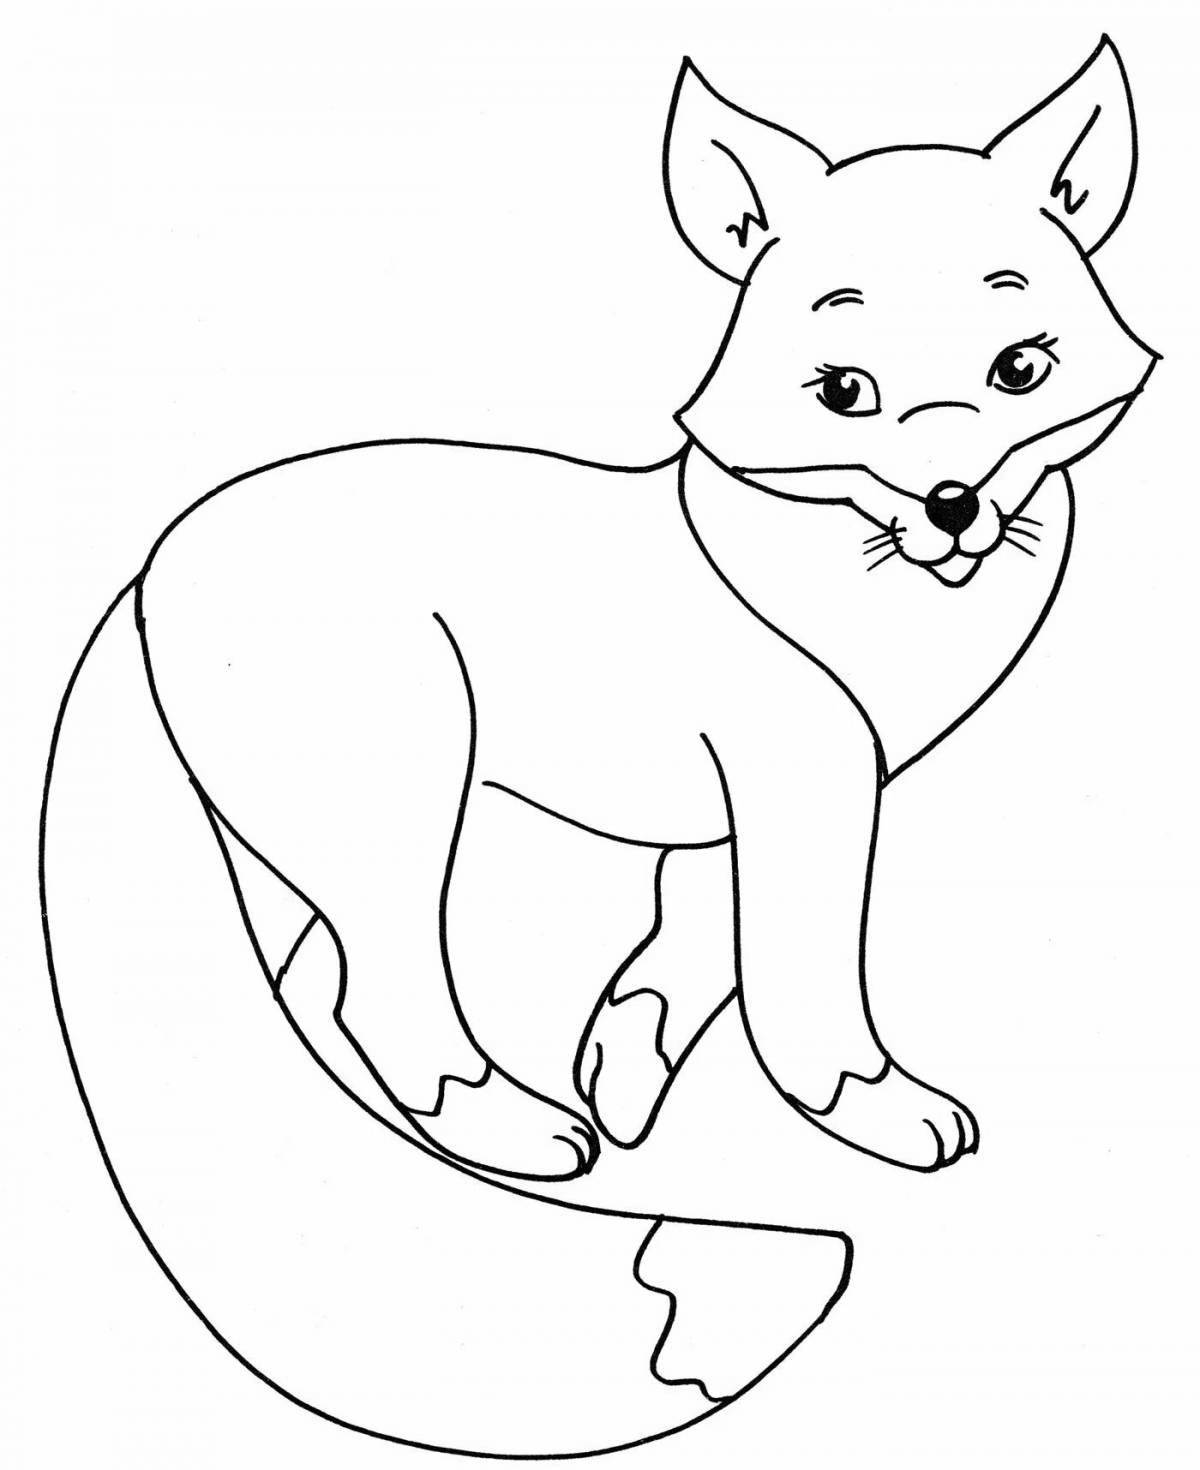 Раскраска radiant fox для детей